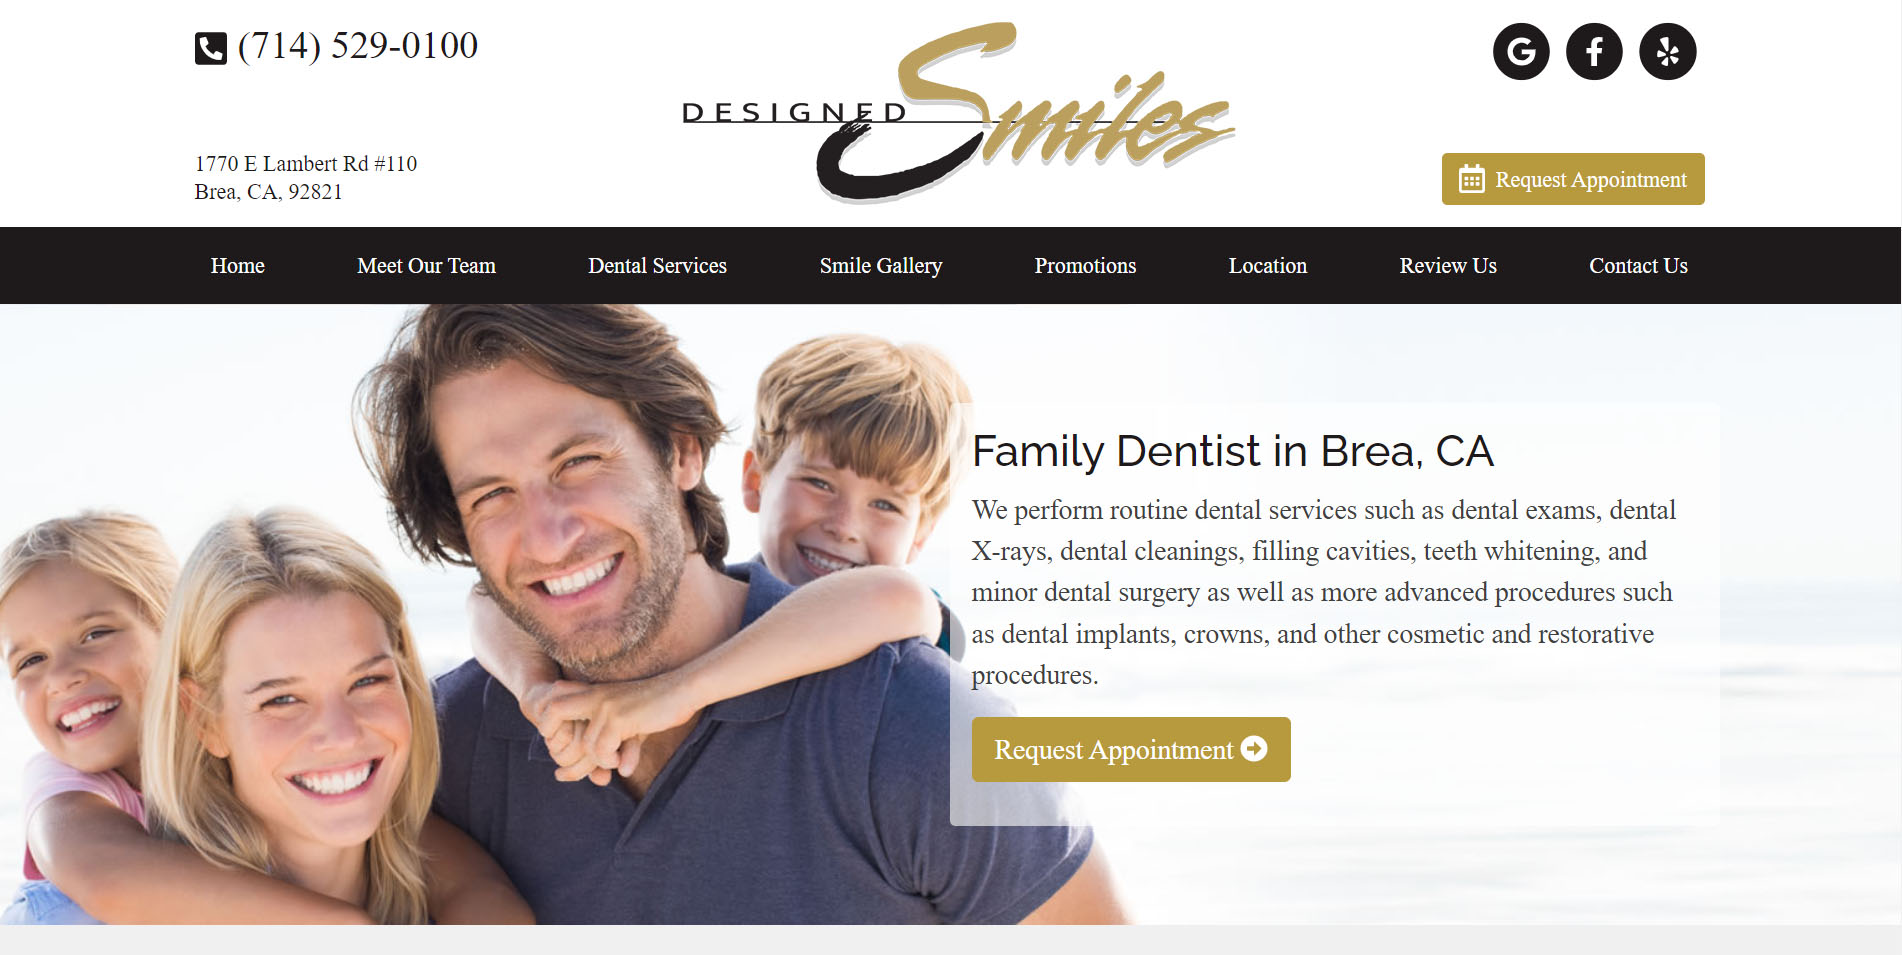 Dental Website Design #5 by Dental Web Services